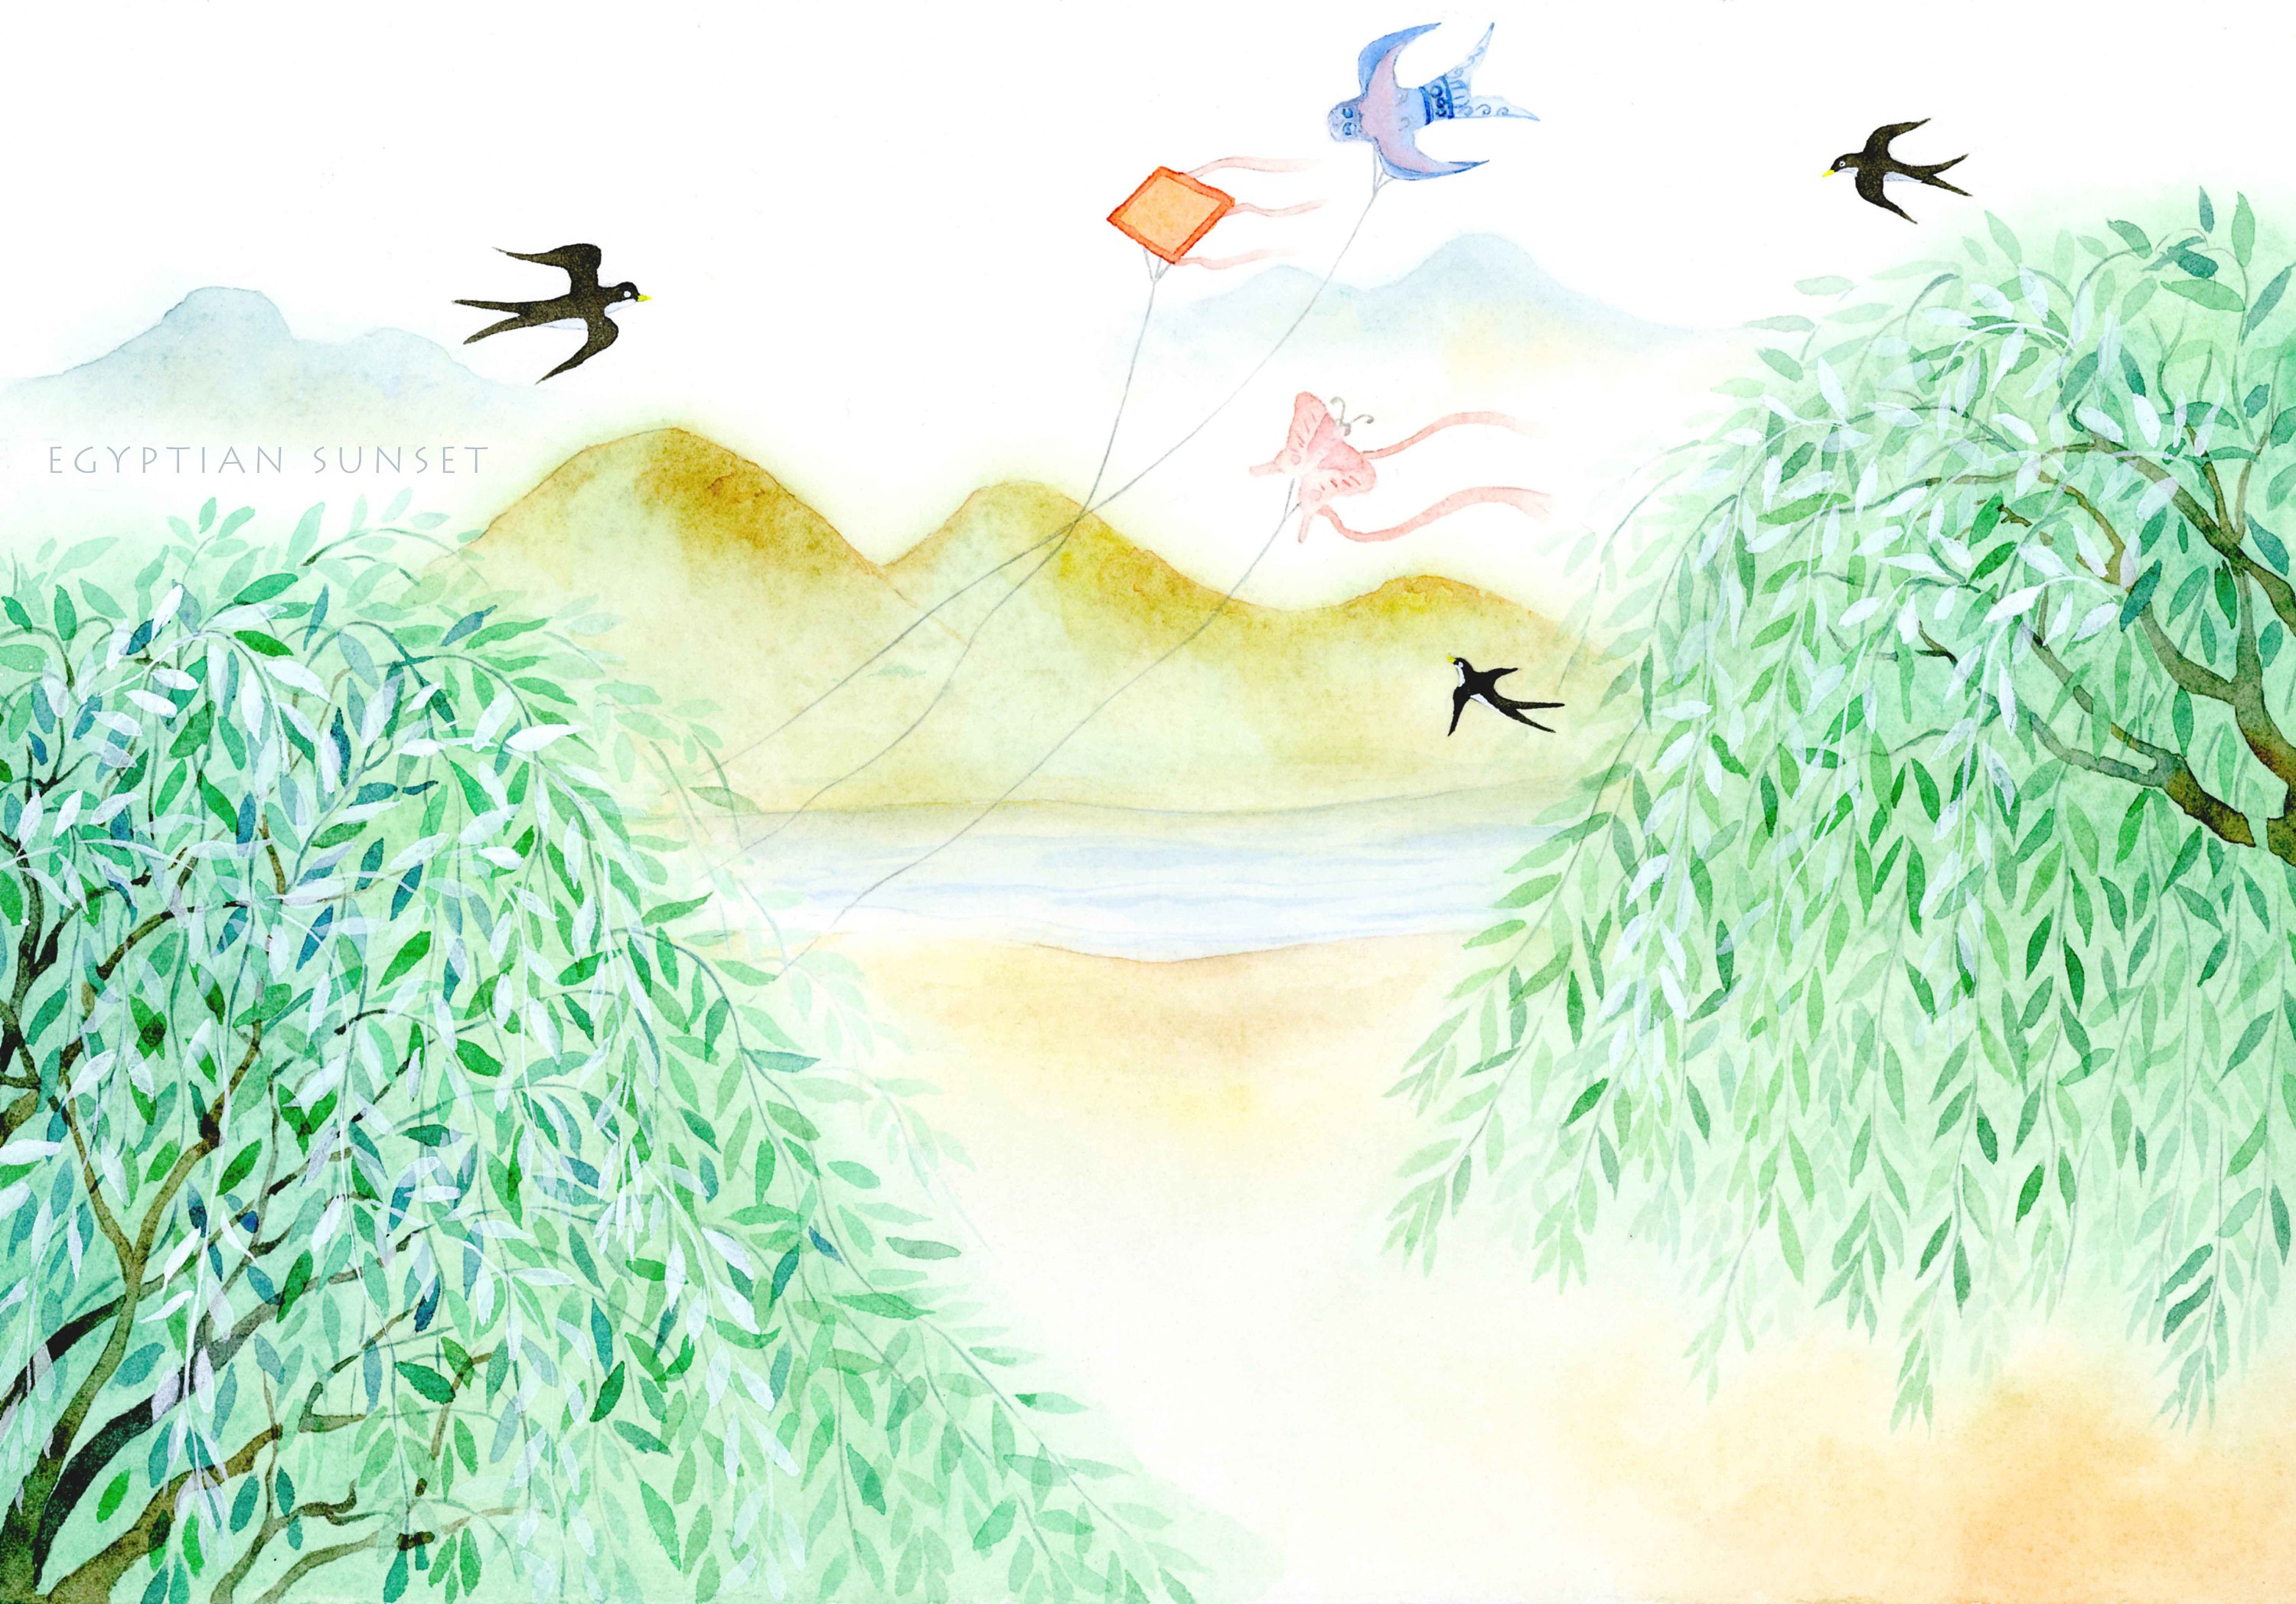 二十四节气立春春天的柳叶插画图片-千库网